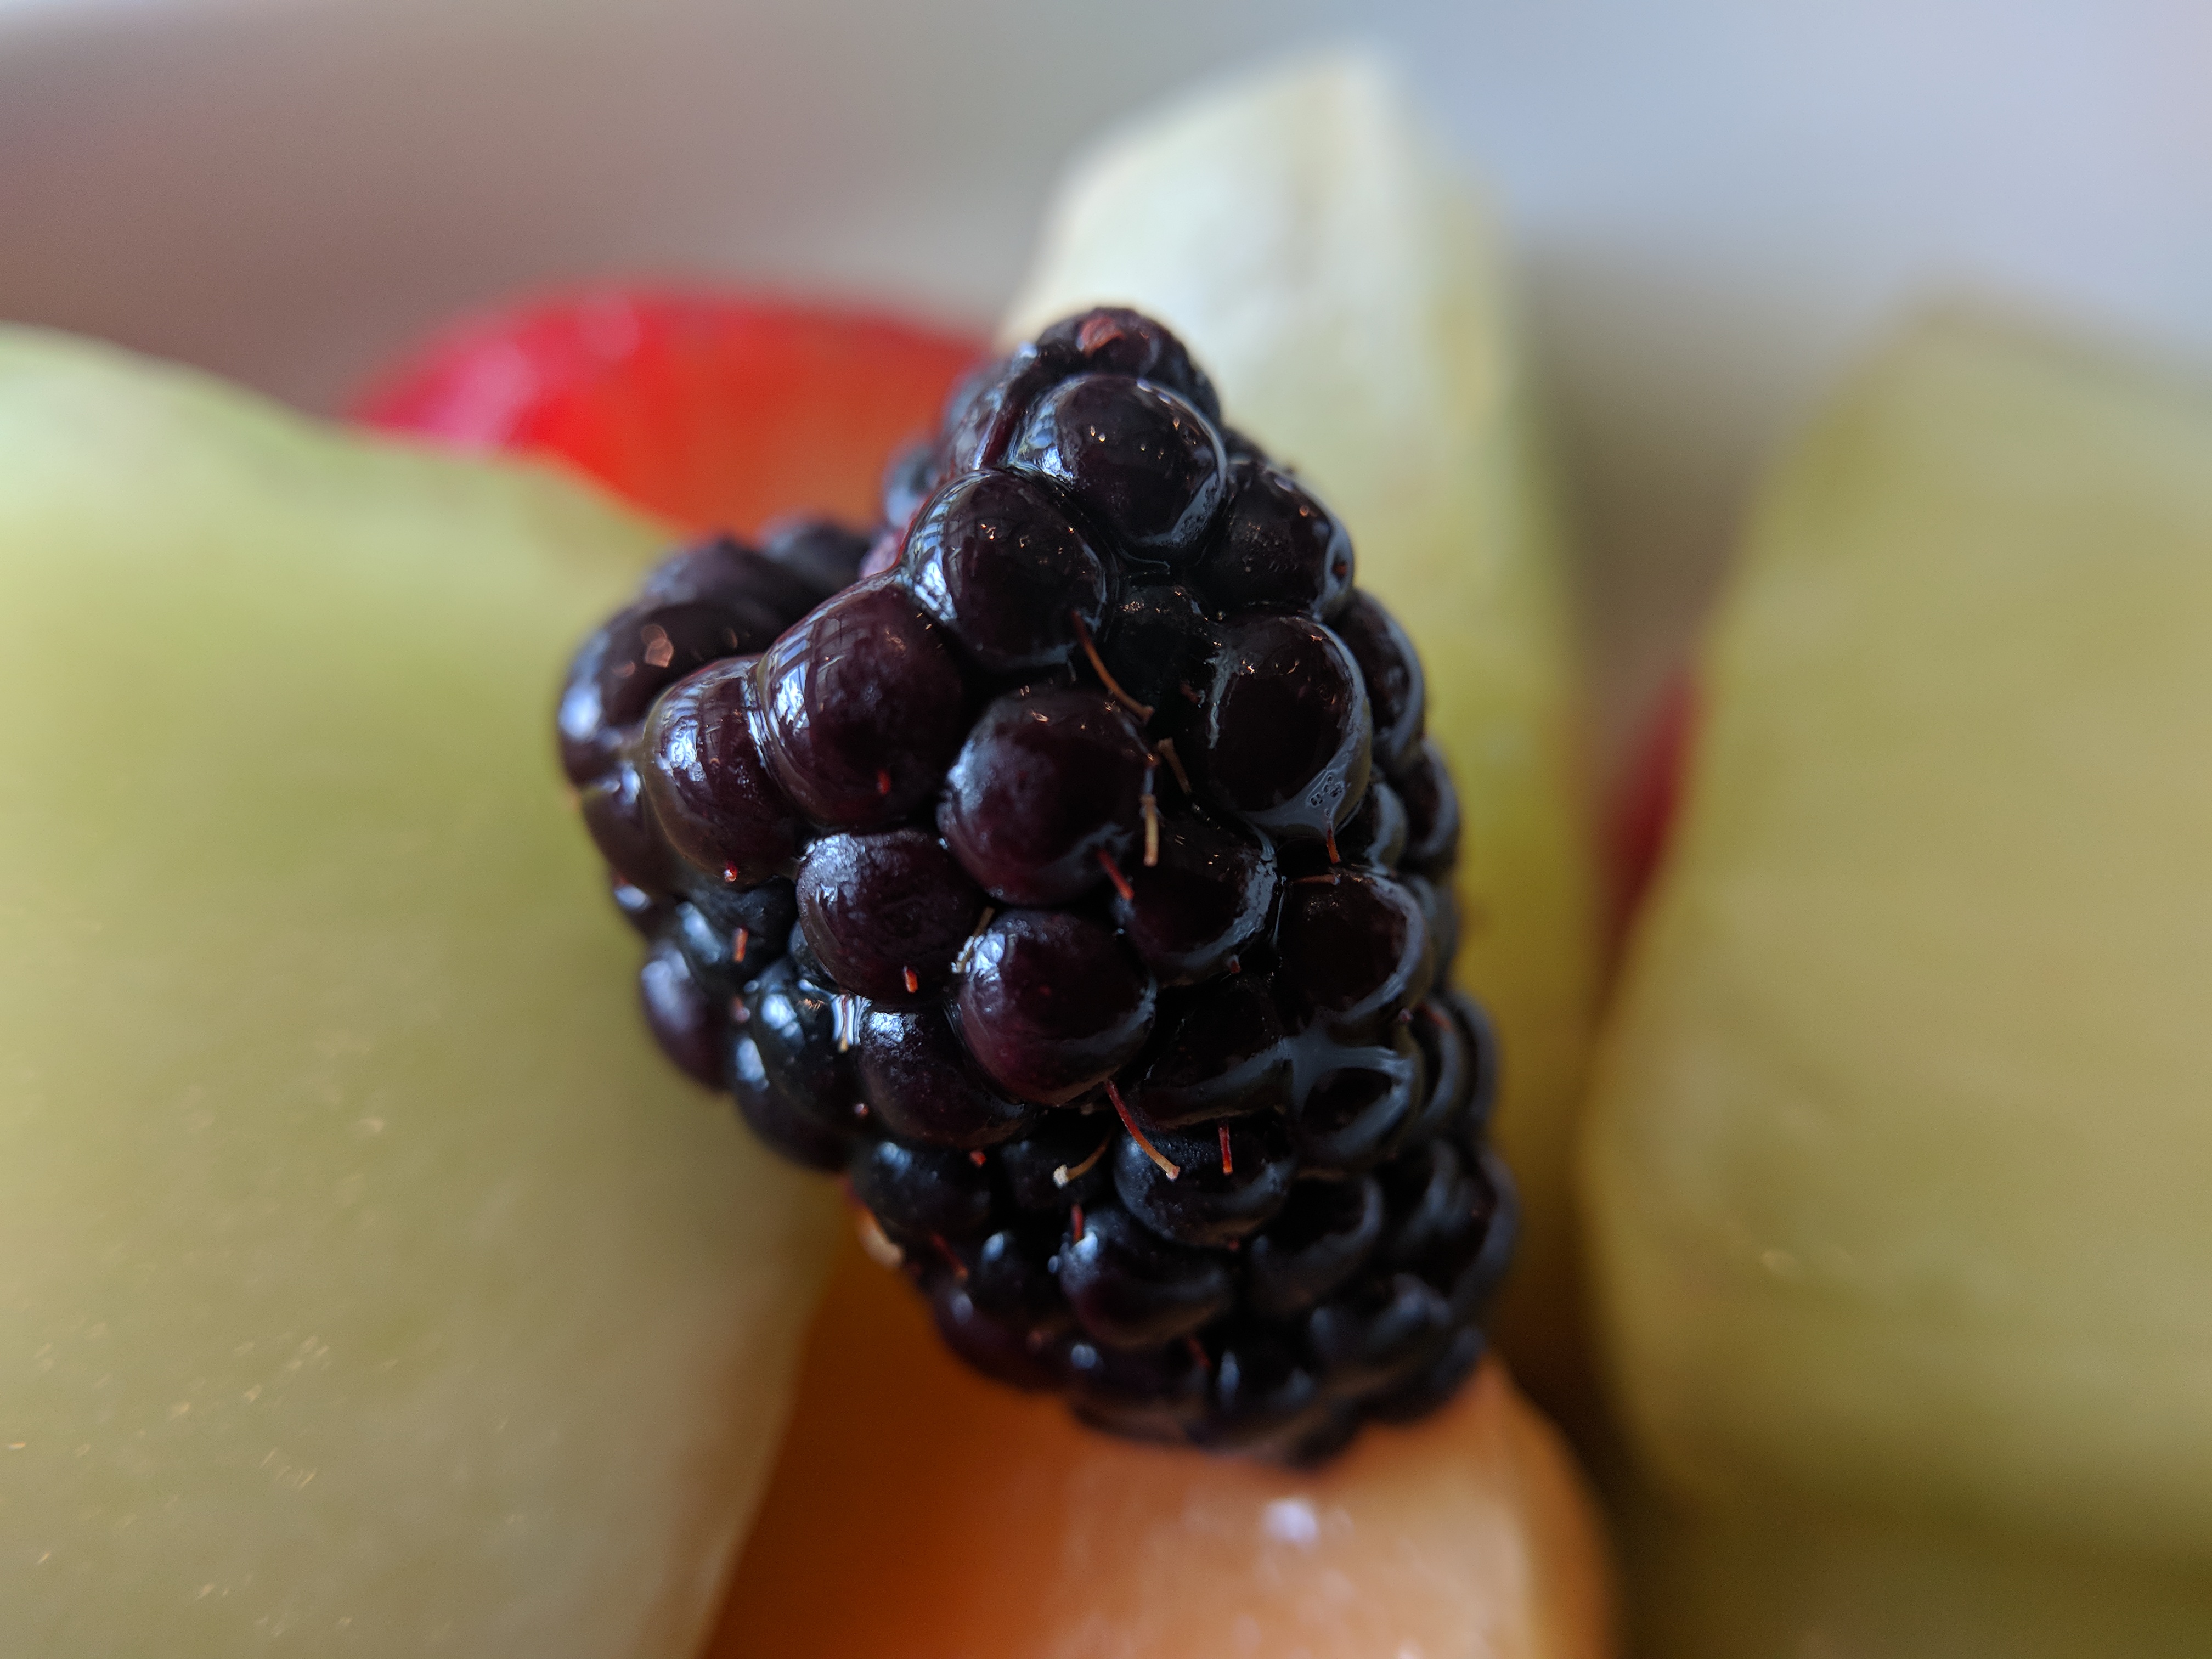 Blackberry in fruit salad macro